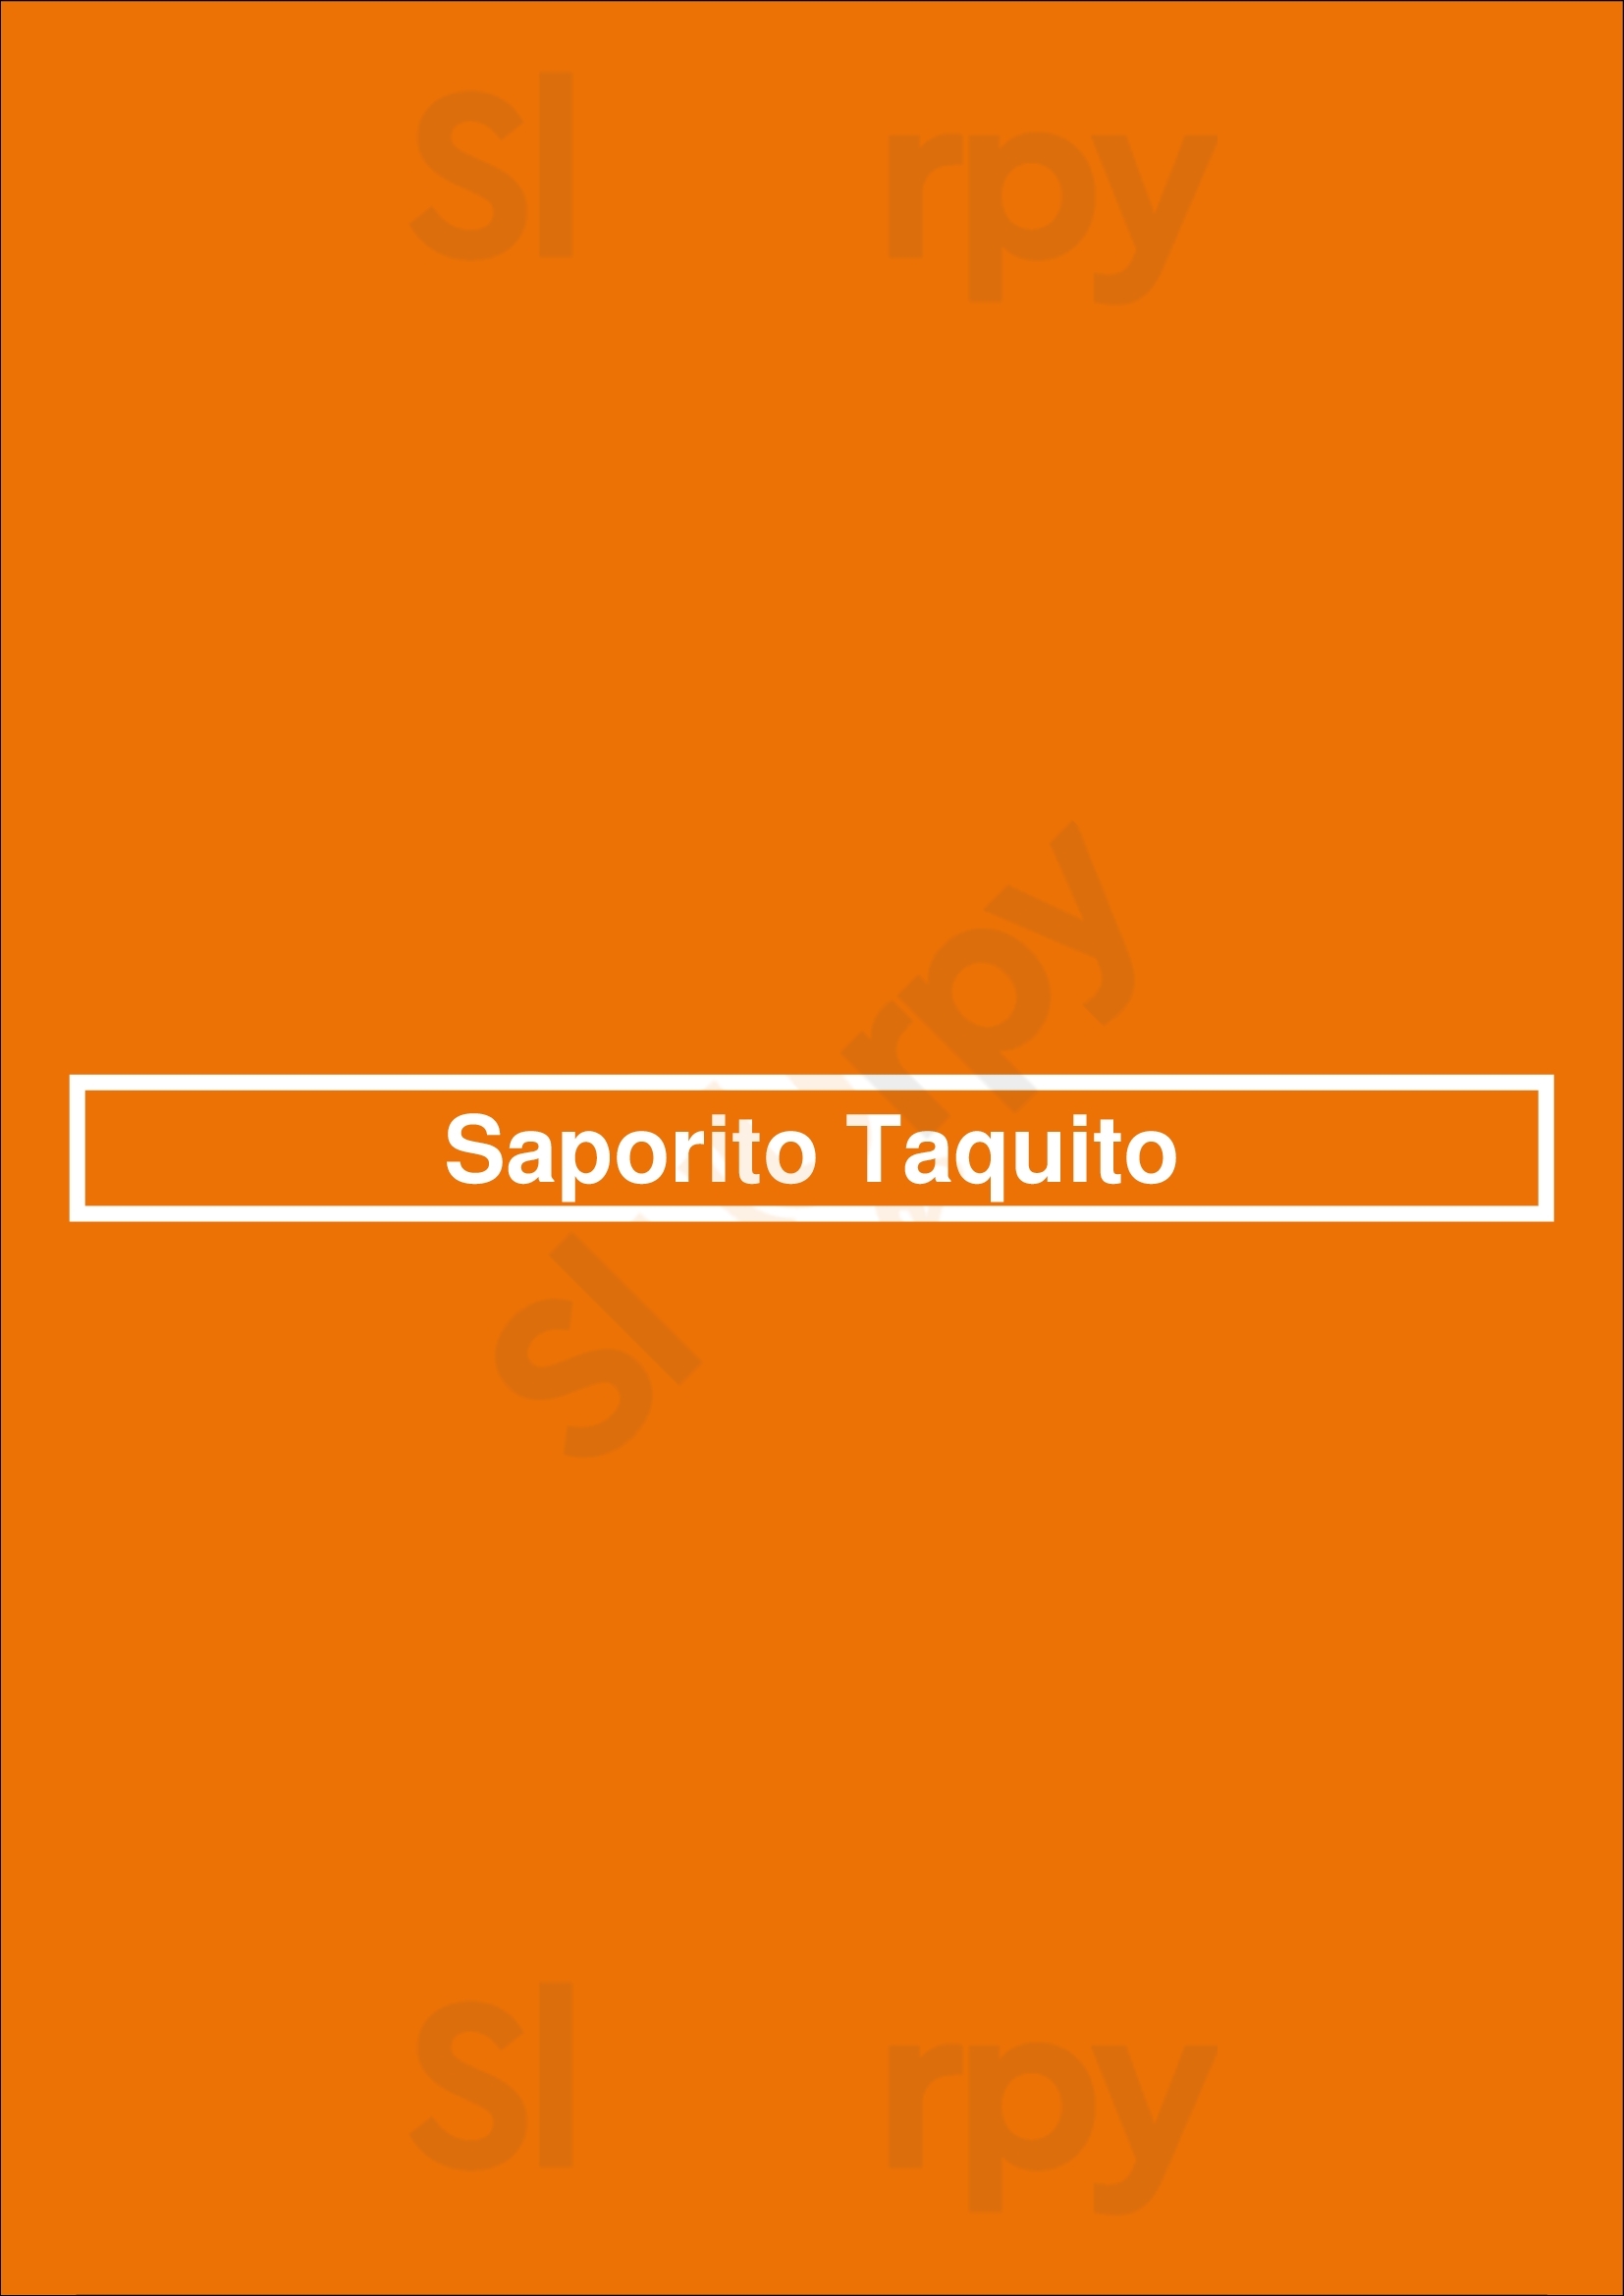 Saporito Taquito Melbourne Menu - 1